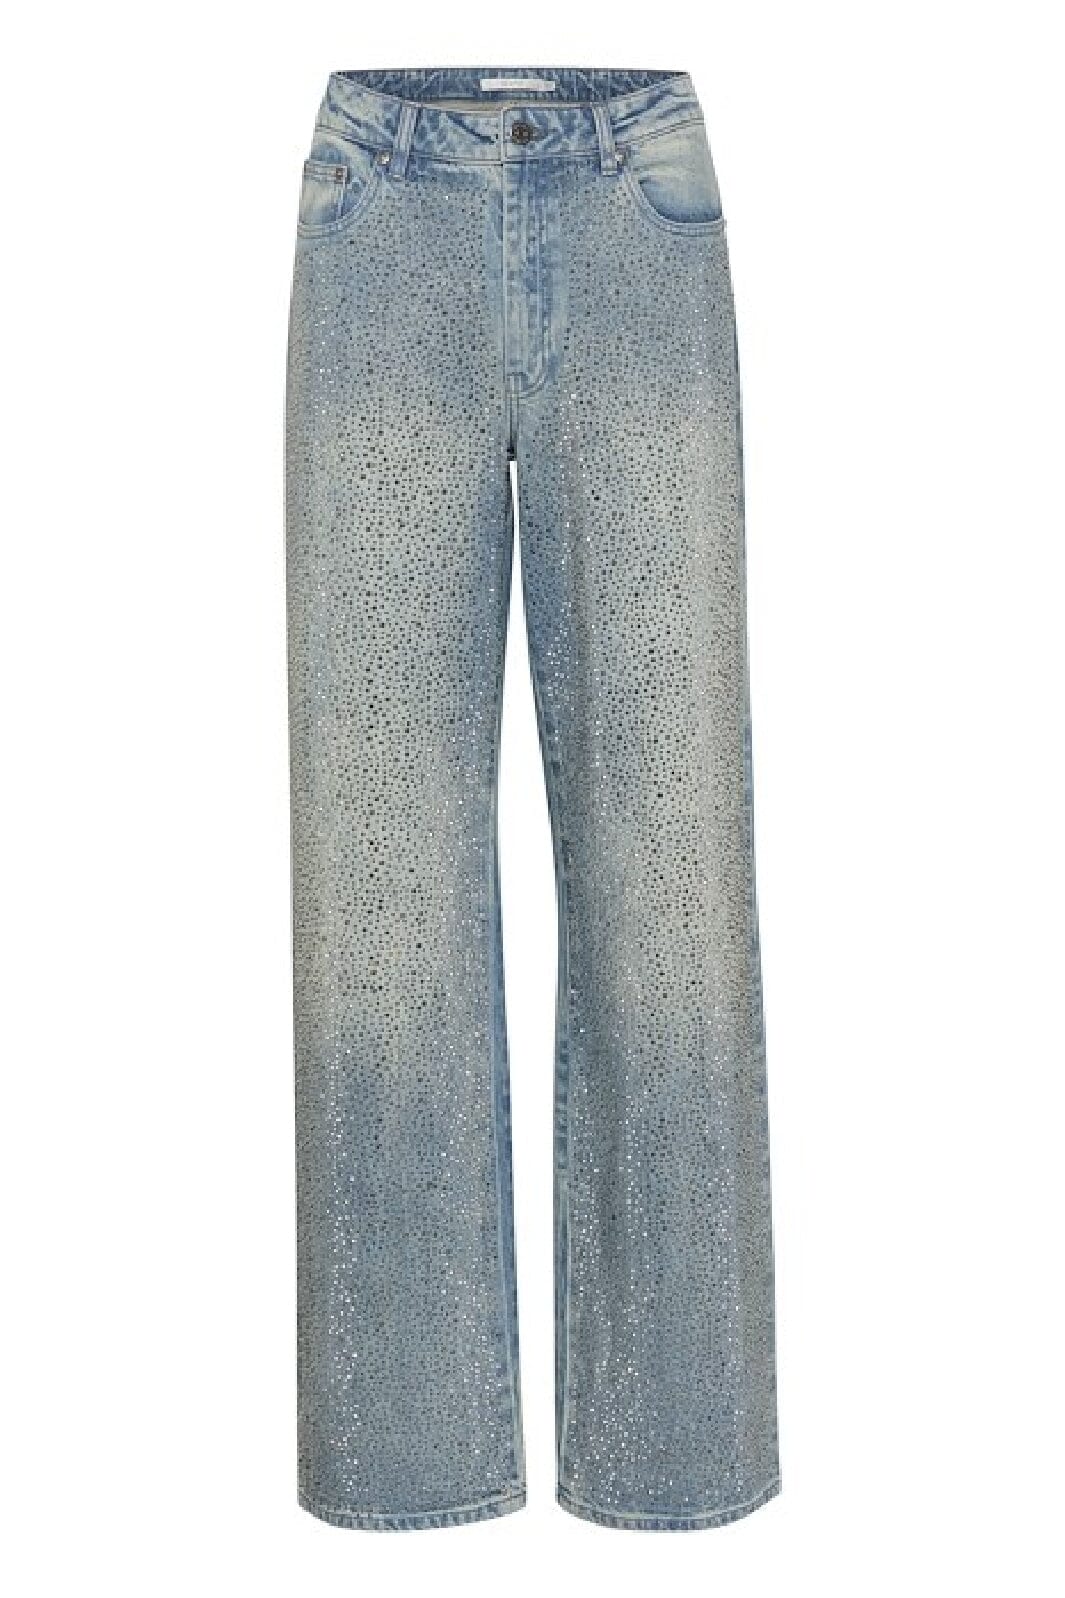 Gestuz - ZorahGZ MW jeans - Mid blue washed Jeans 